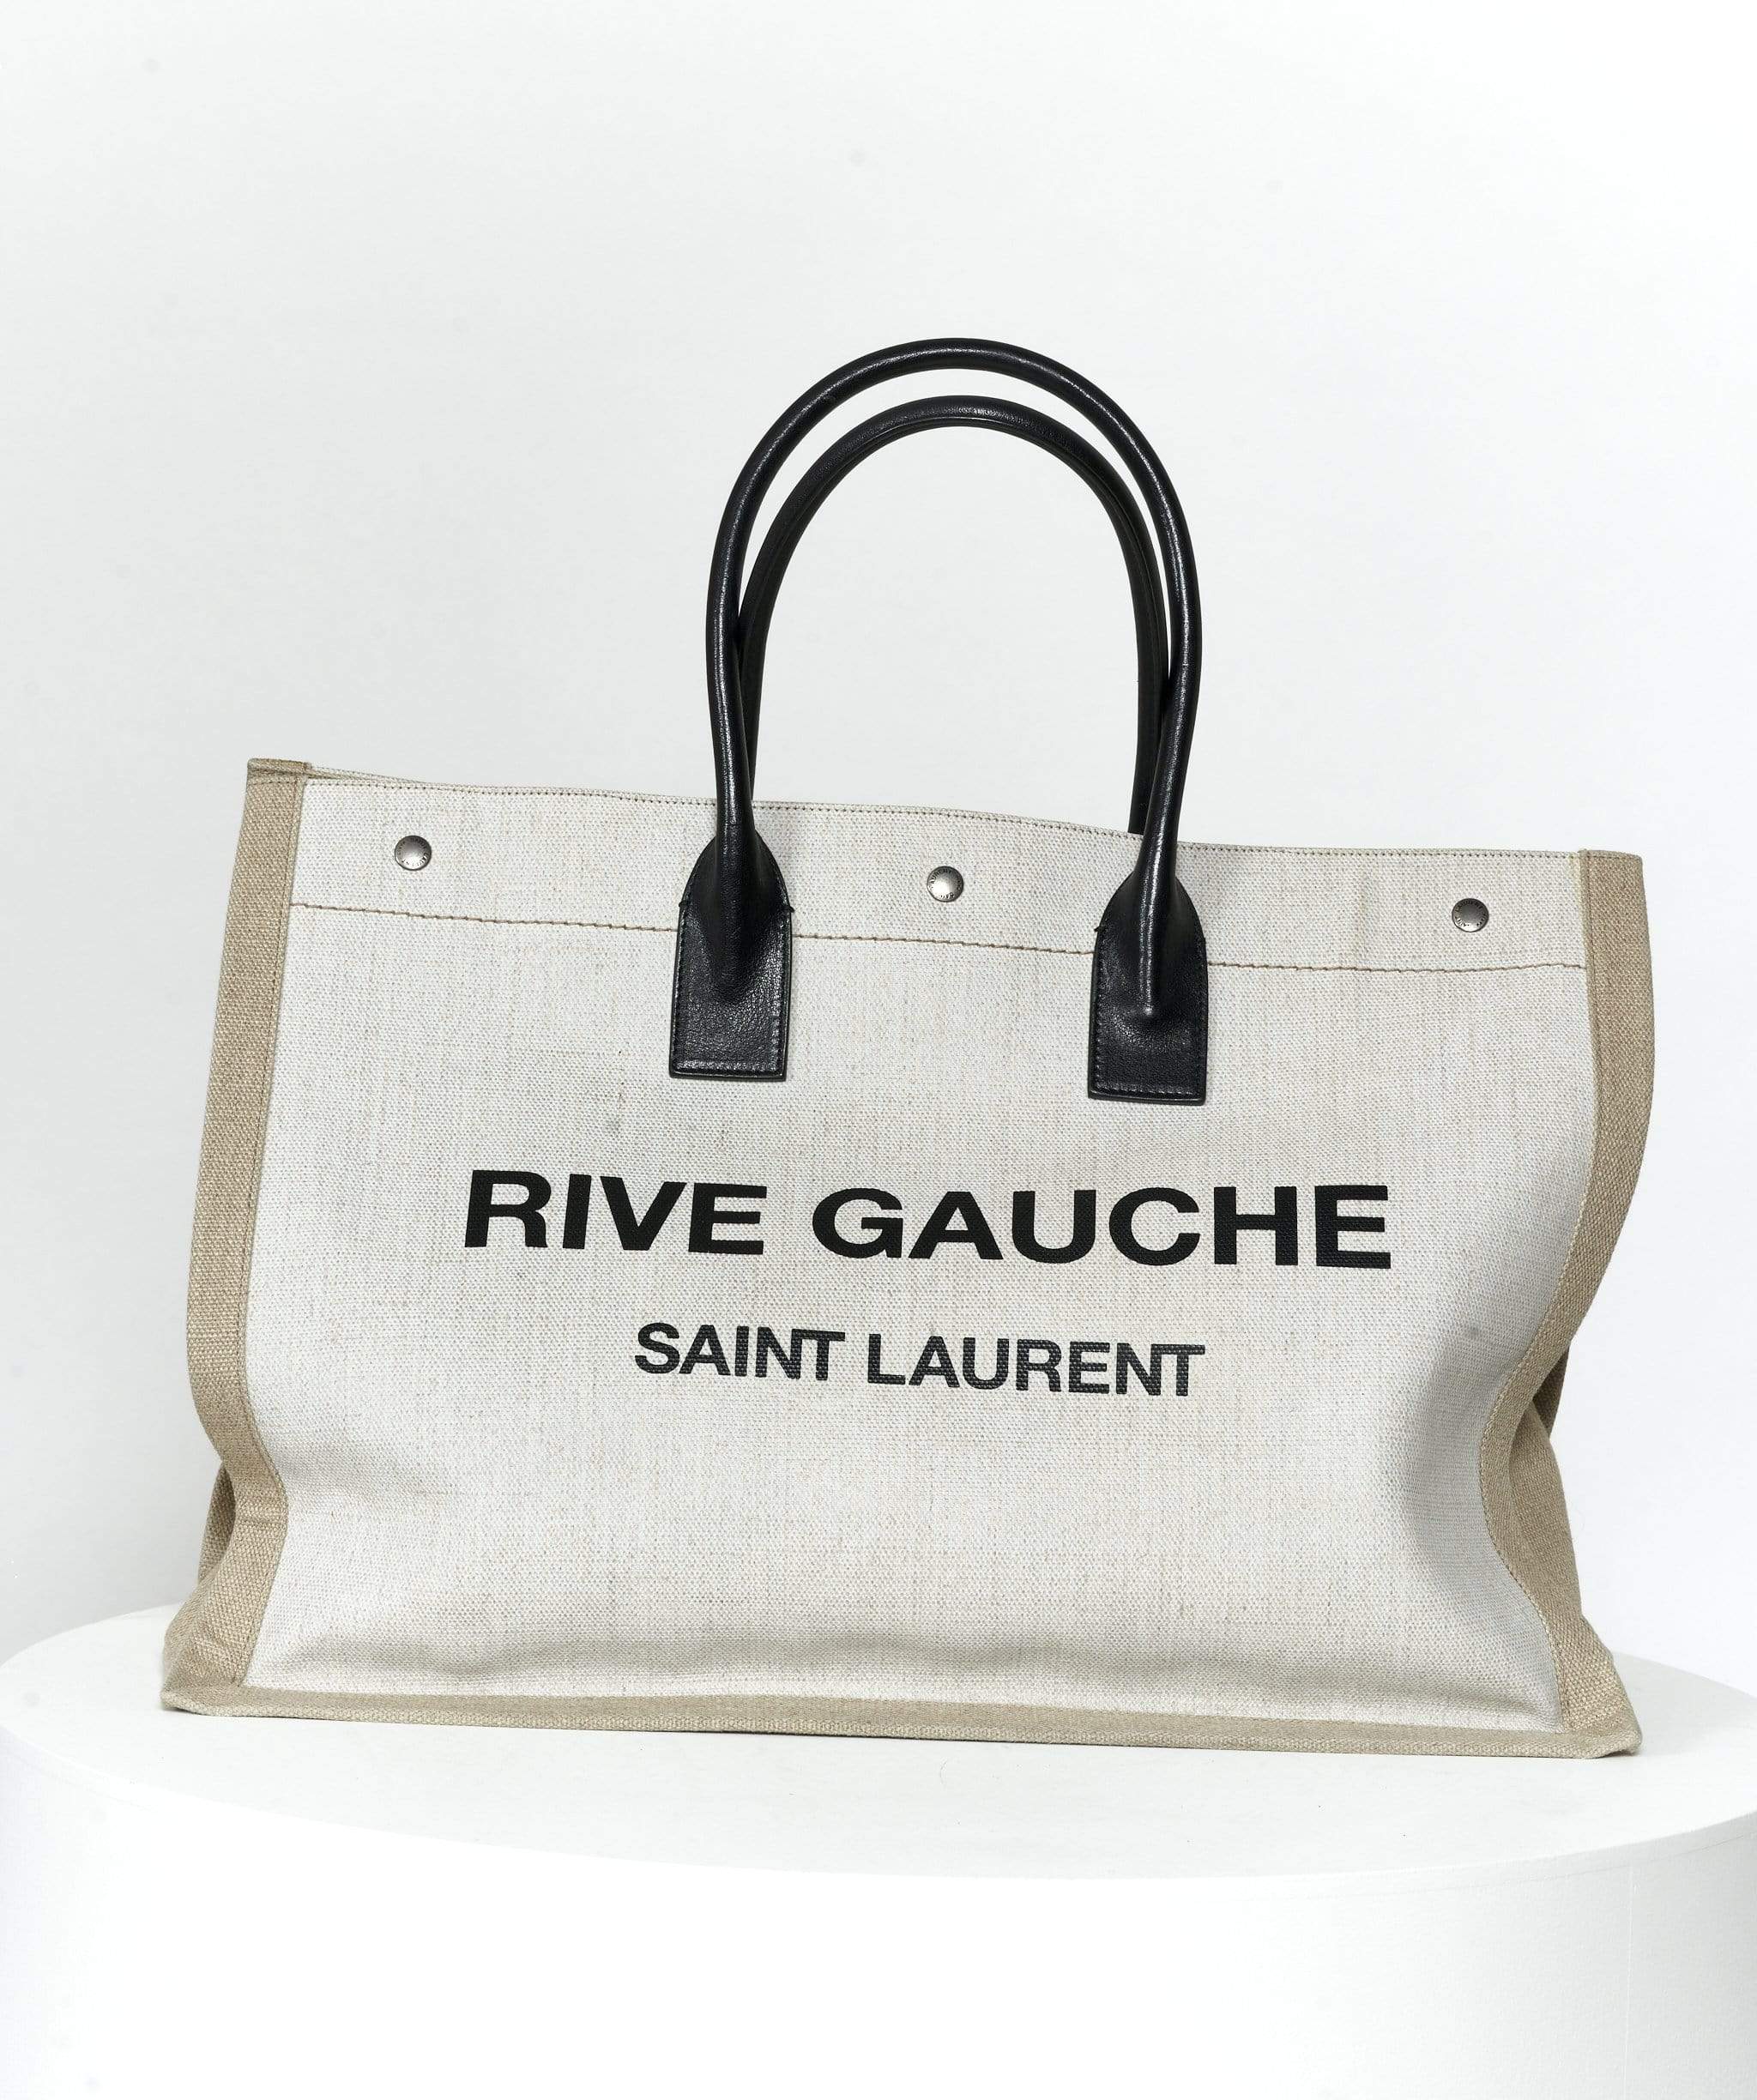 Yves Saint Laurent Saint Laurent Rive Gauche Beige tote bag